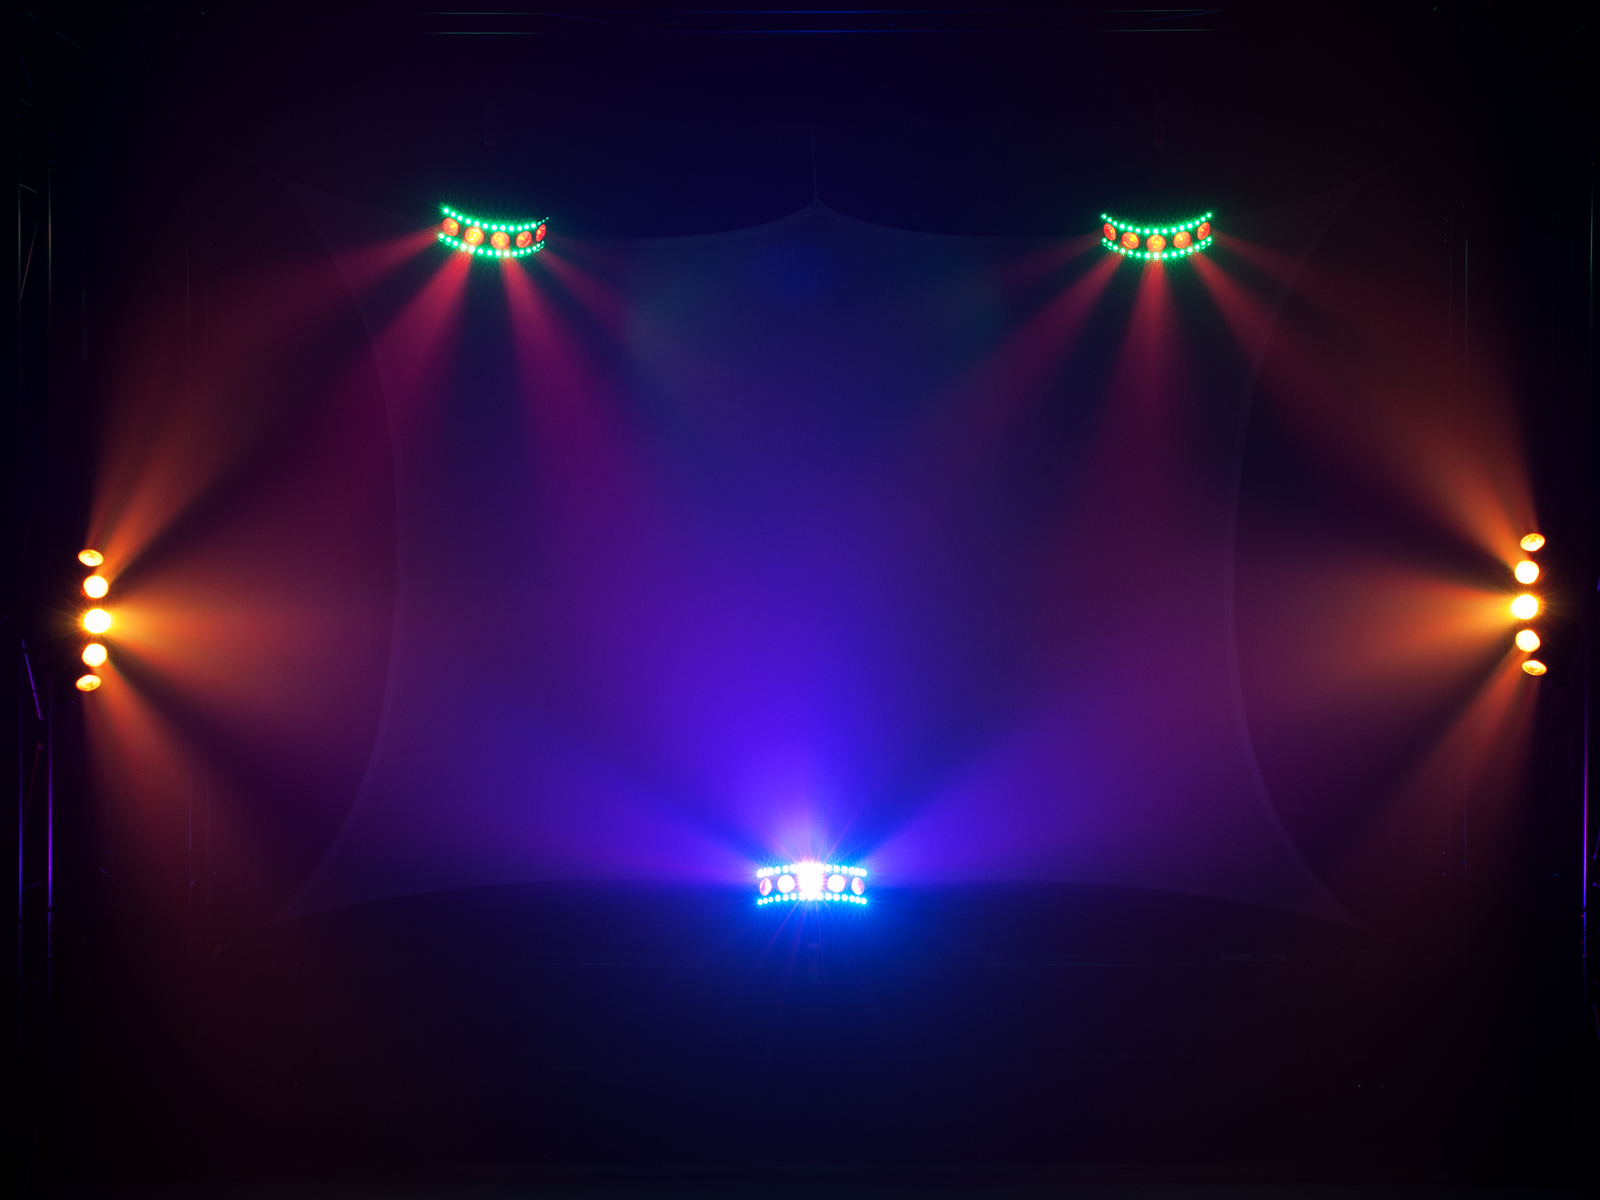 4in1-LED-Effektscheinwerfer mit RGB+UV-LEDs, dynamischen Farbeffekten und Stroboskop